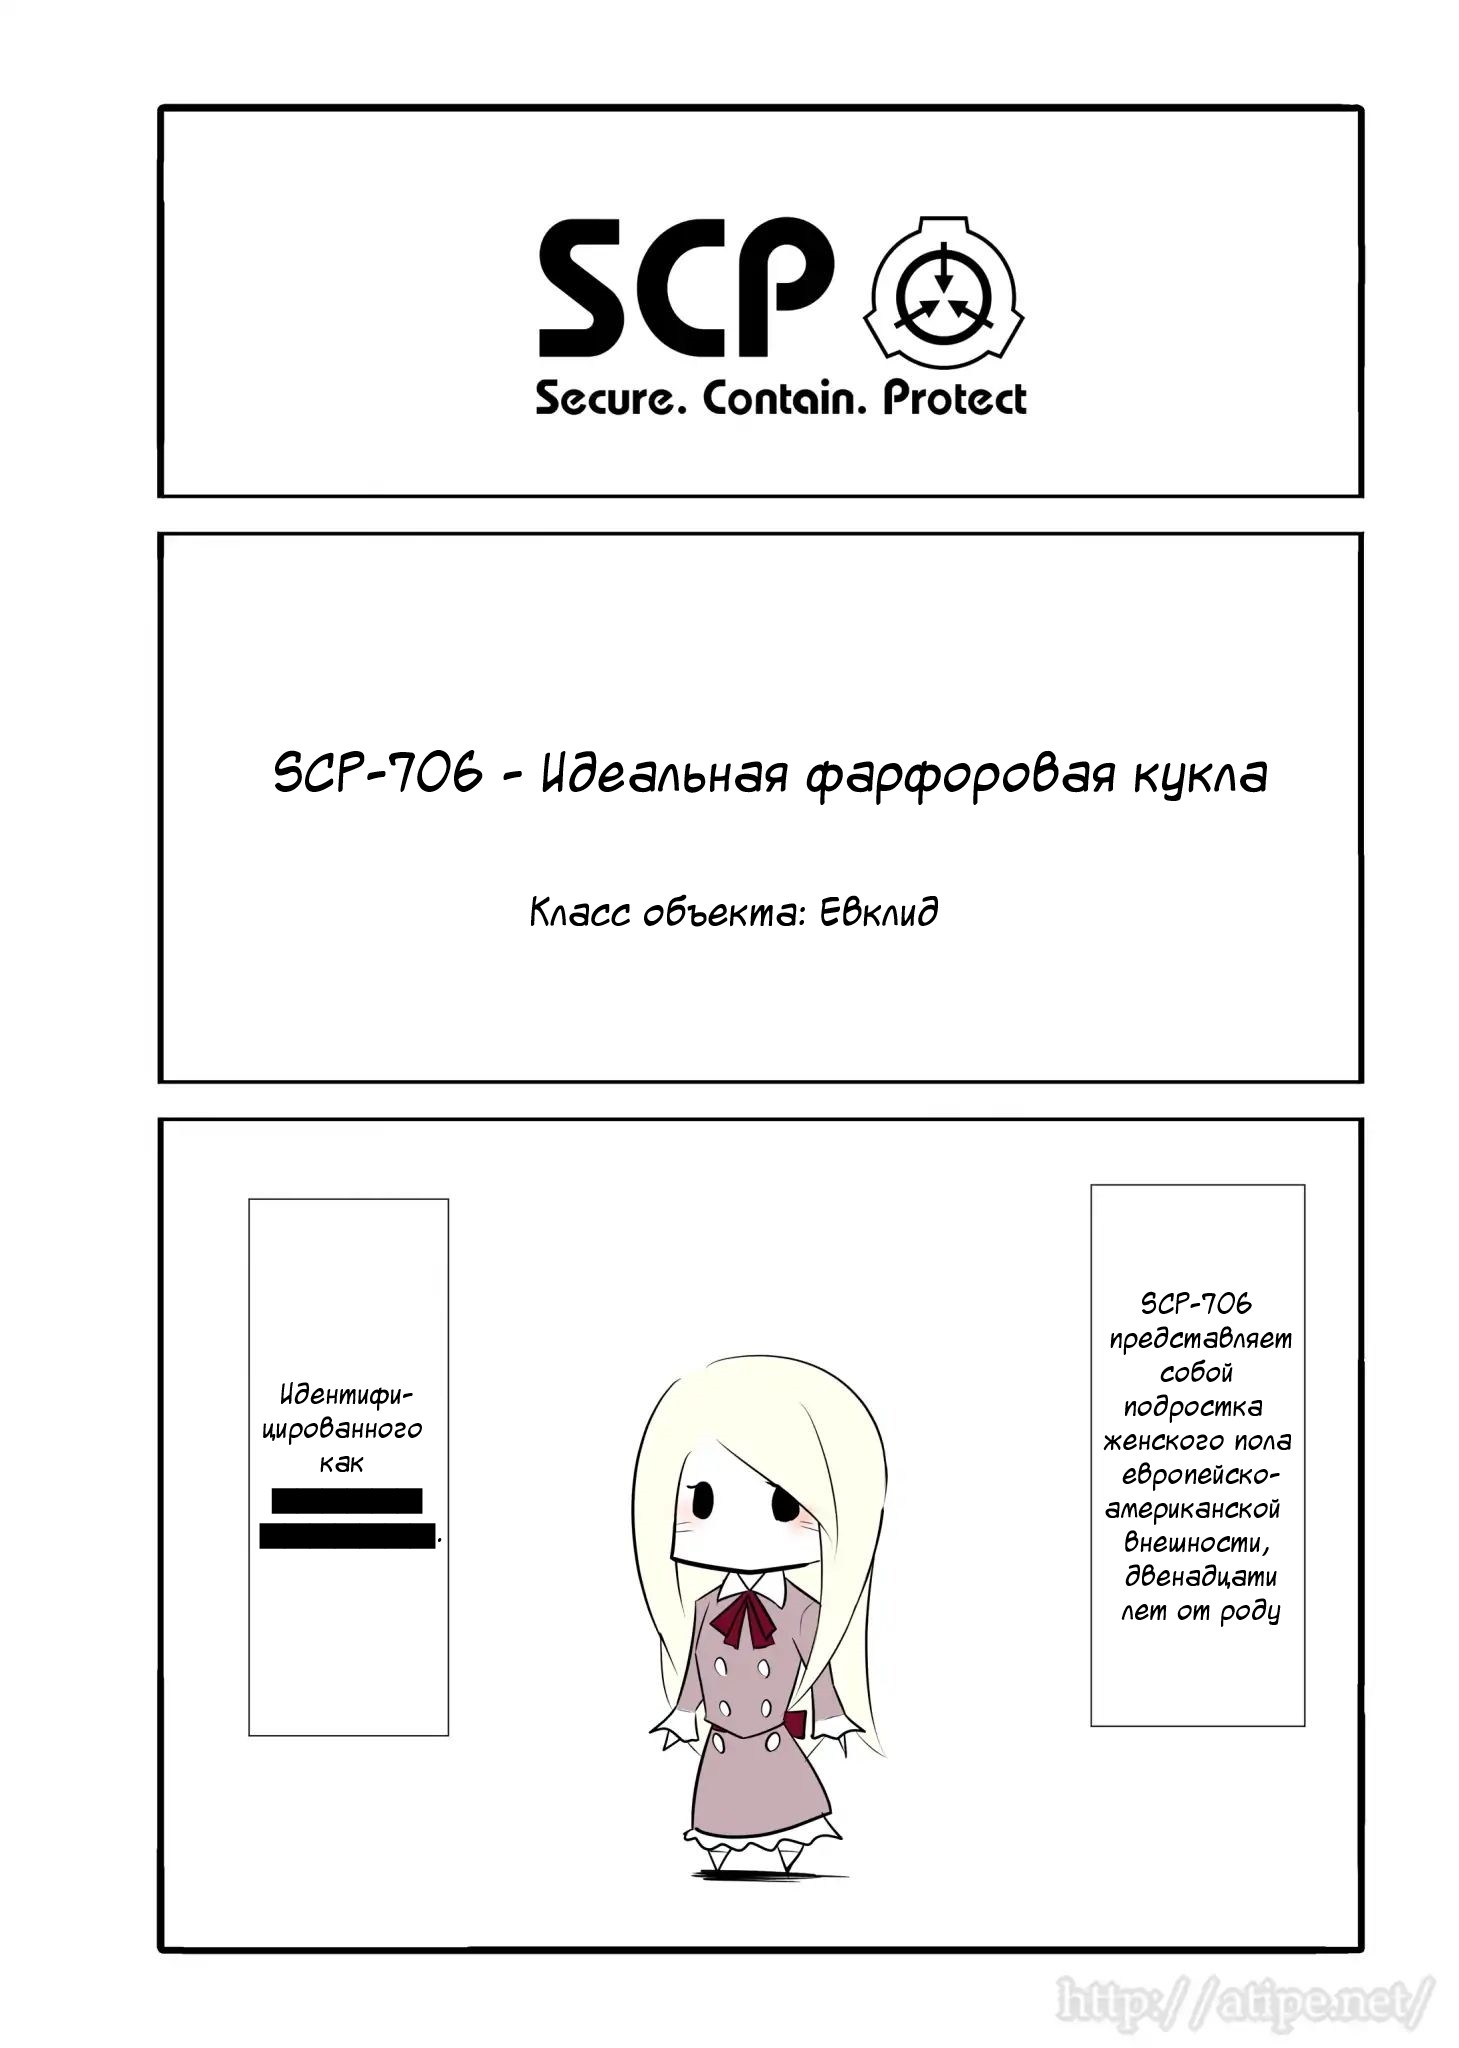 Упрощенный SCP 1 - 43 SCP-706